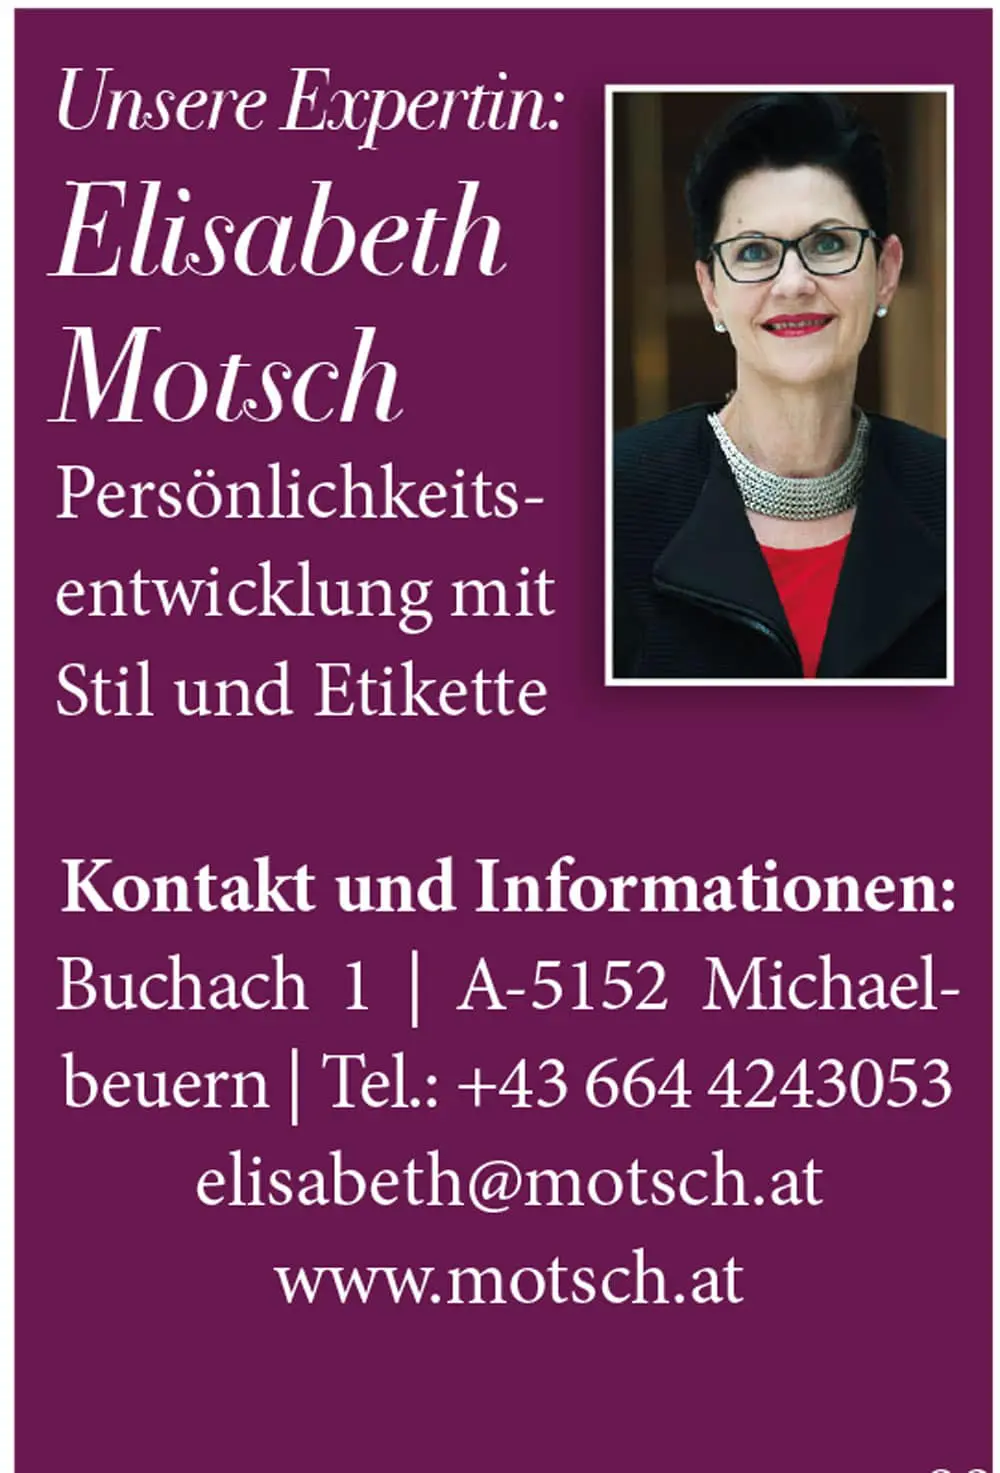 Elisabeth Motsch kurzbeschreibung